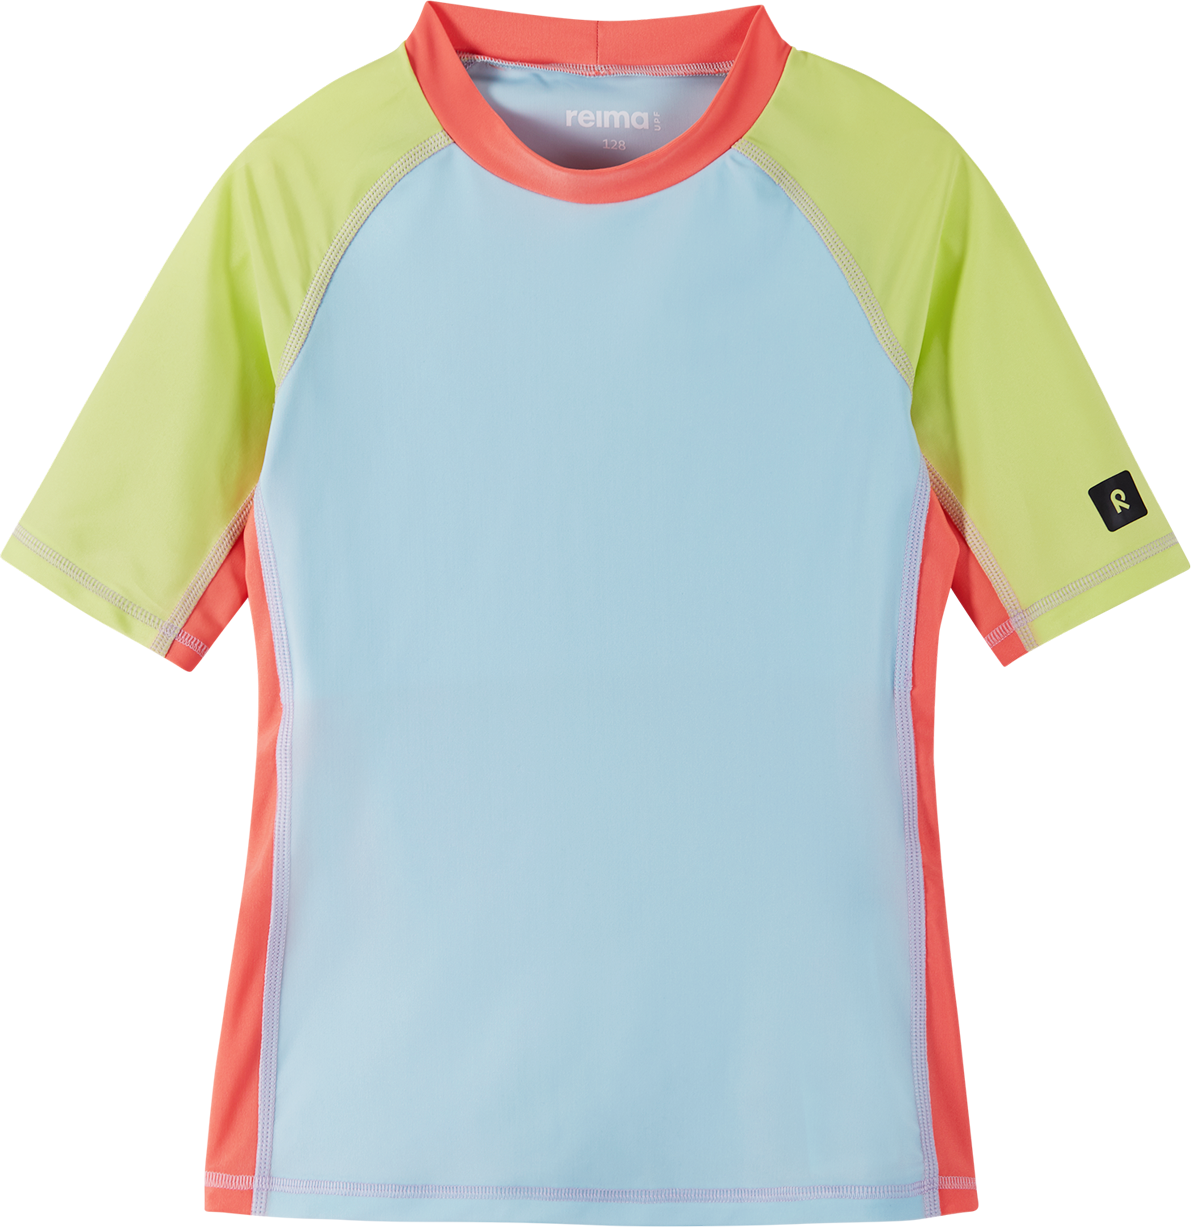 Reima Kids’ Joonia Swim Shirt Light turquoise